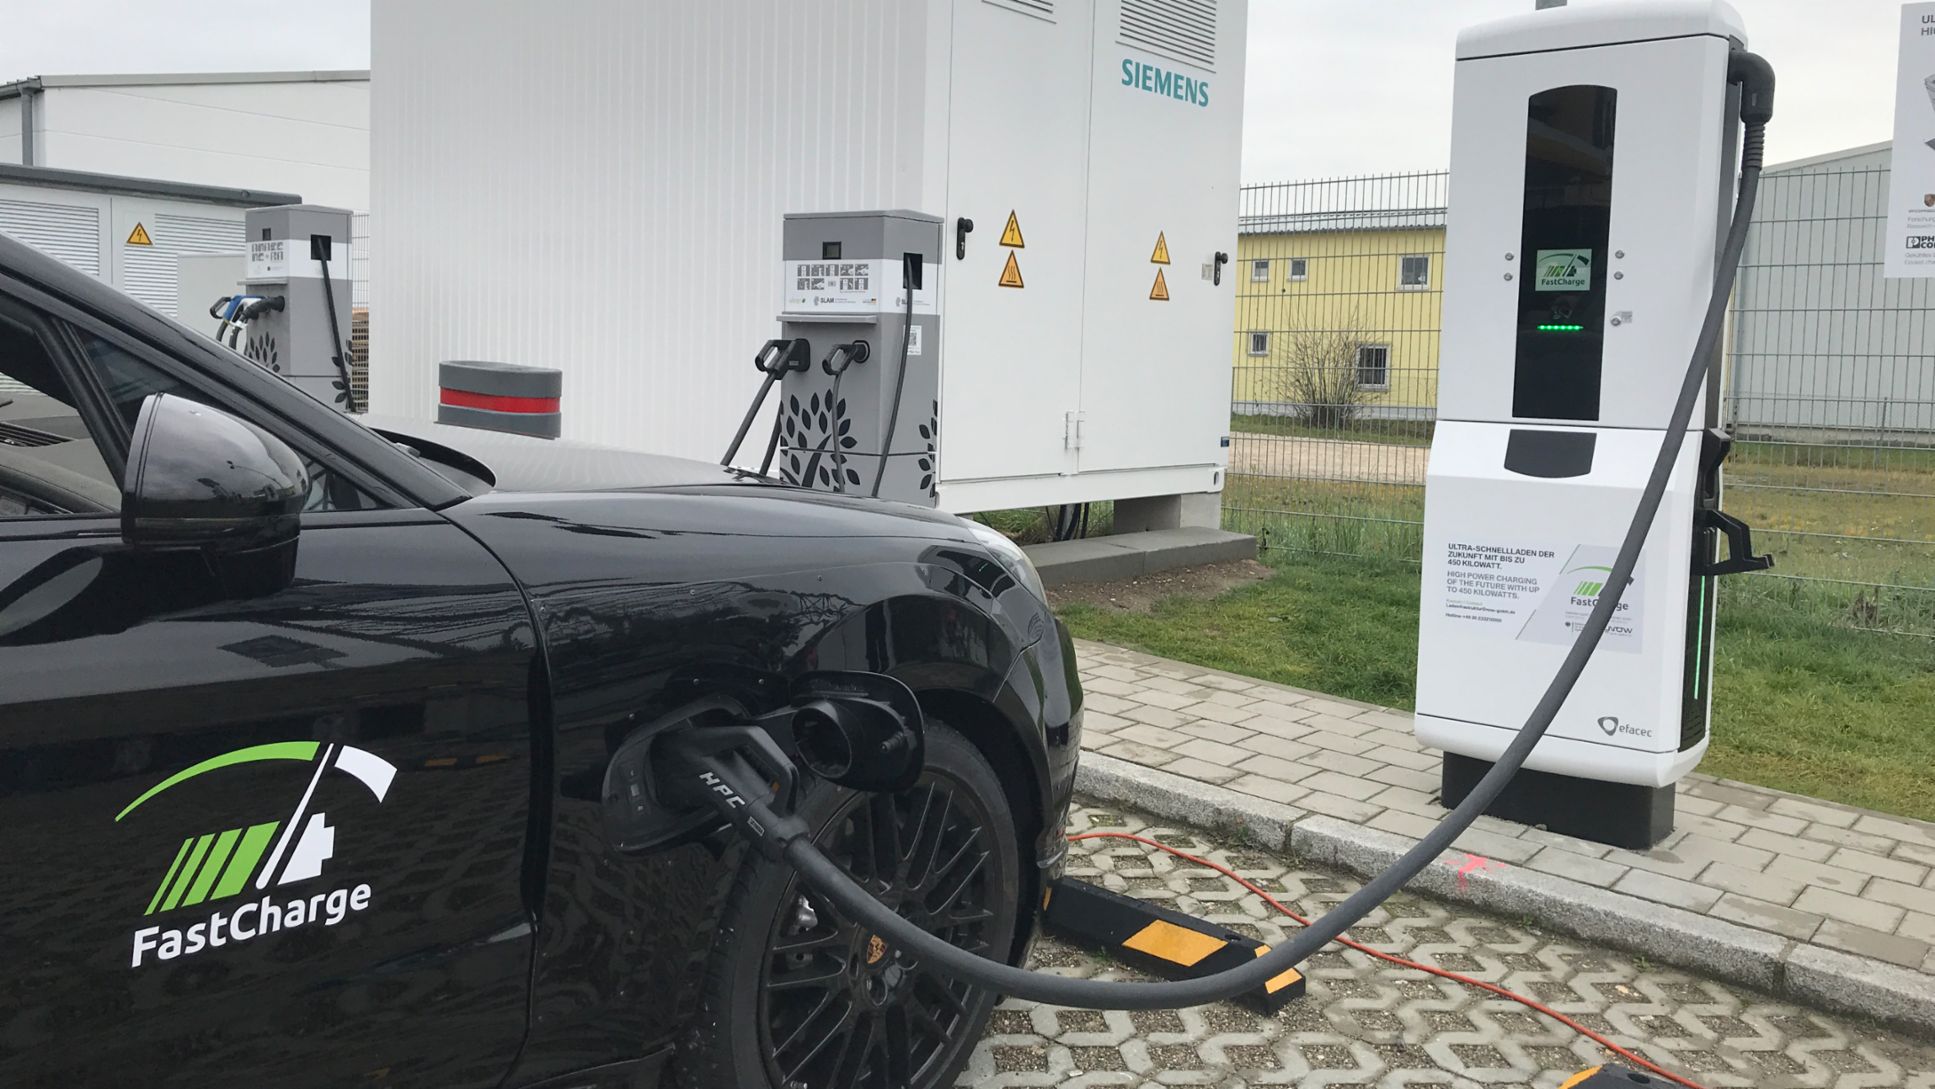 FastCharge, prototipo para estación de carga, Jettingen-Scheppach, 2018, Porsche AG